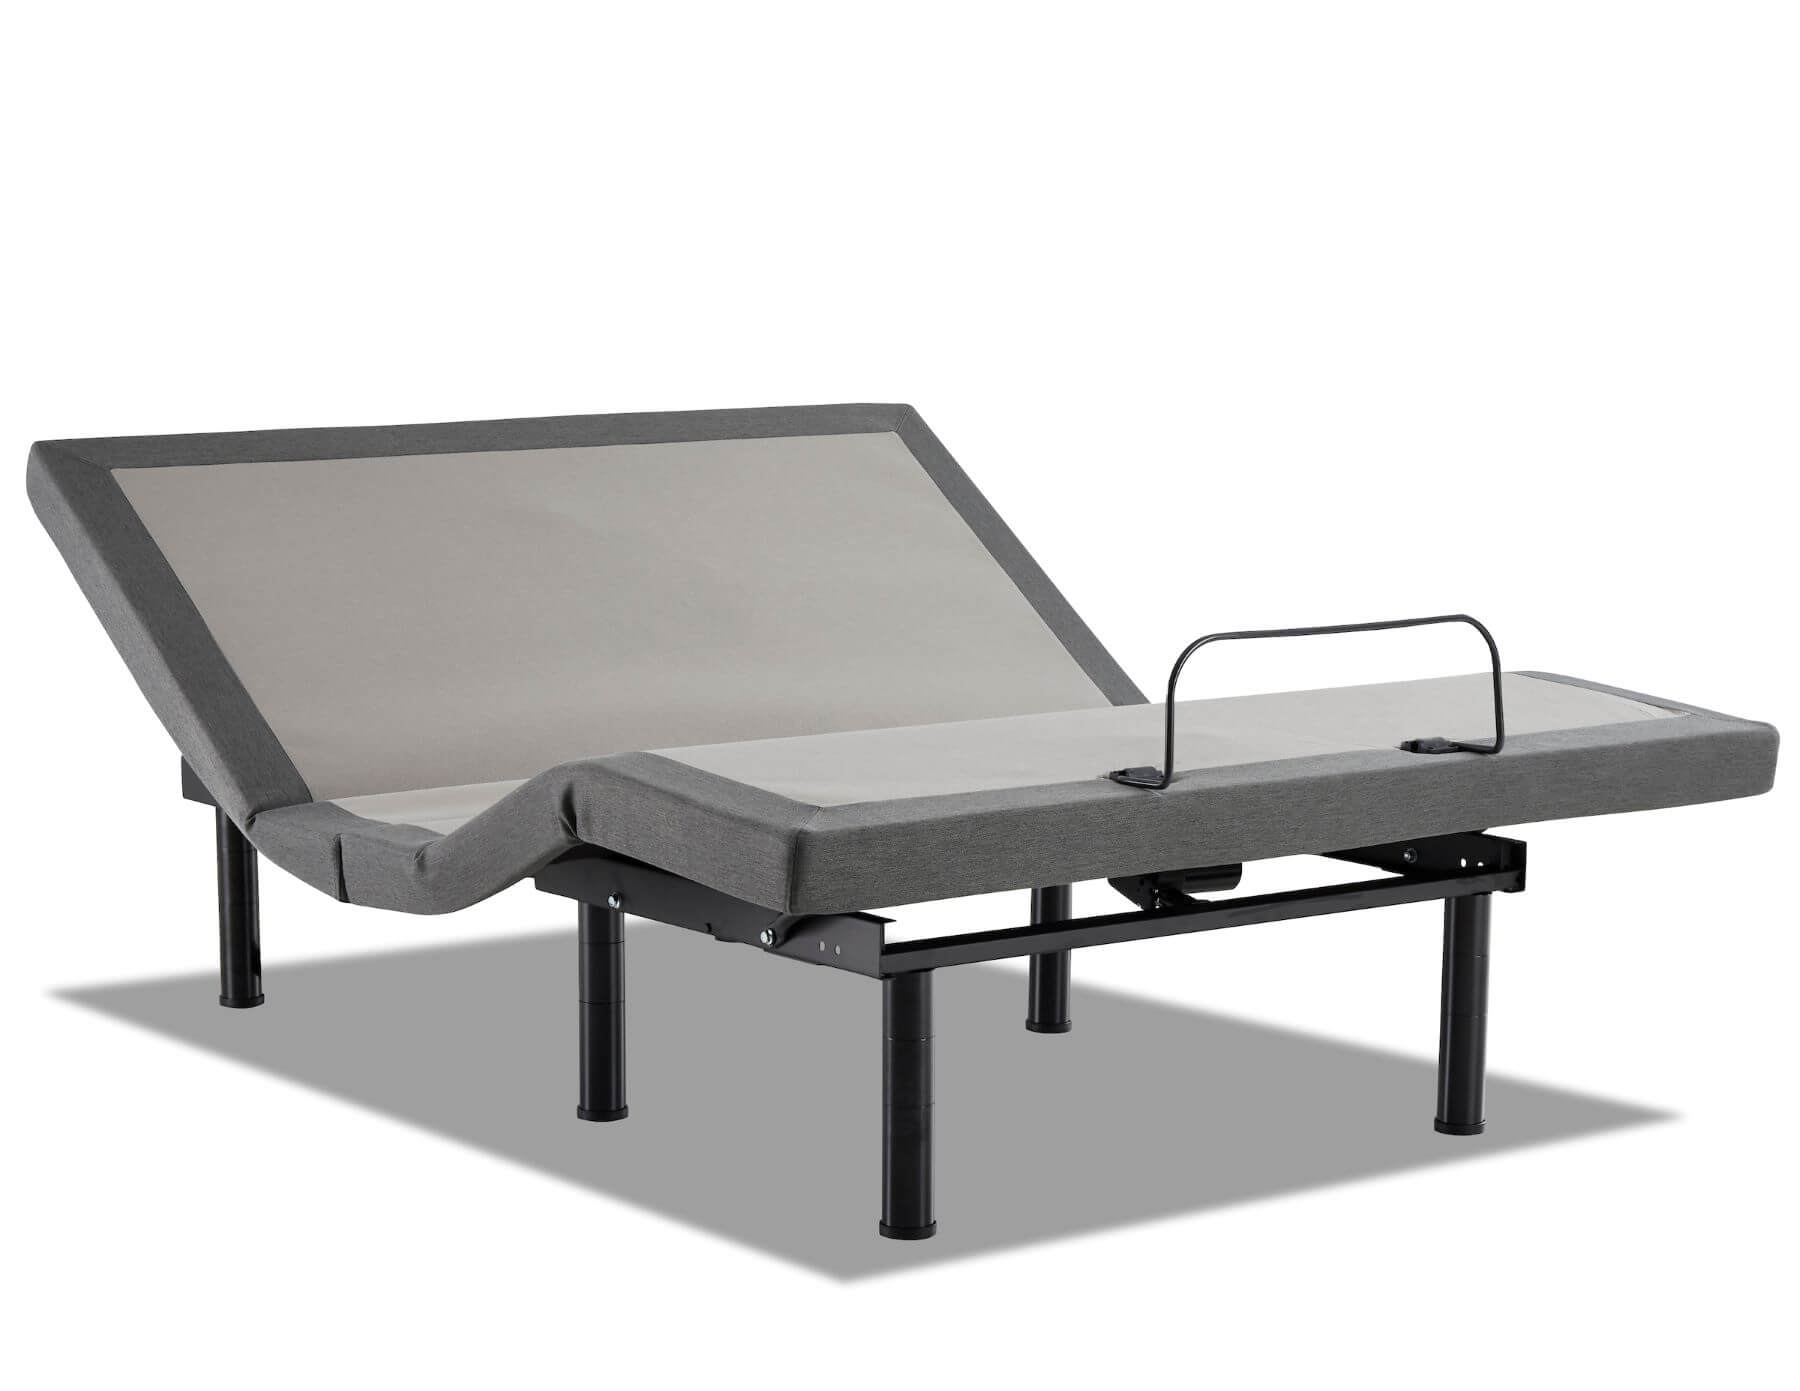 Lifestyle 3500 Adjustable Bed Base, Adjustable Bed Frame